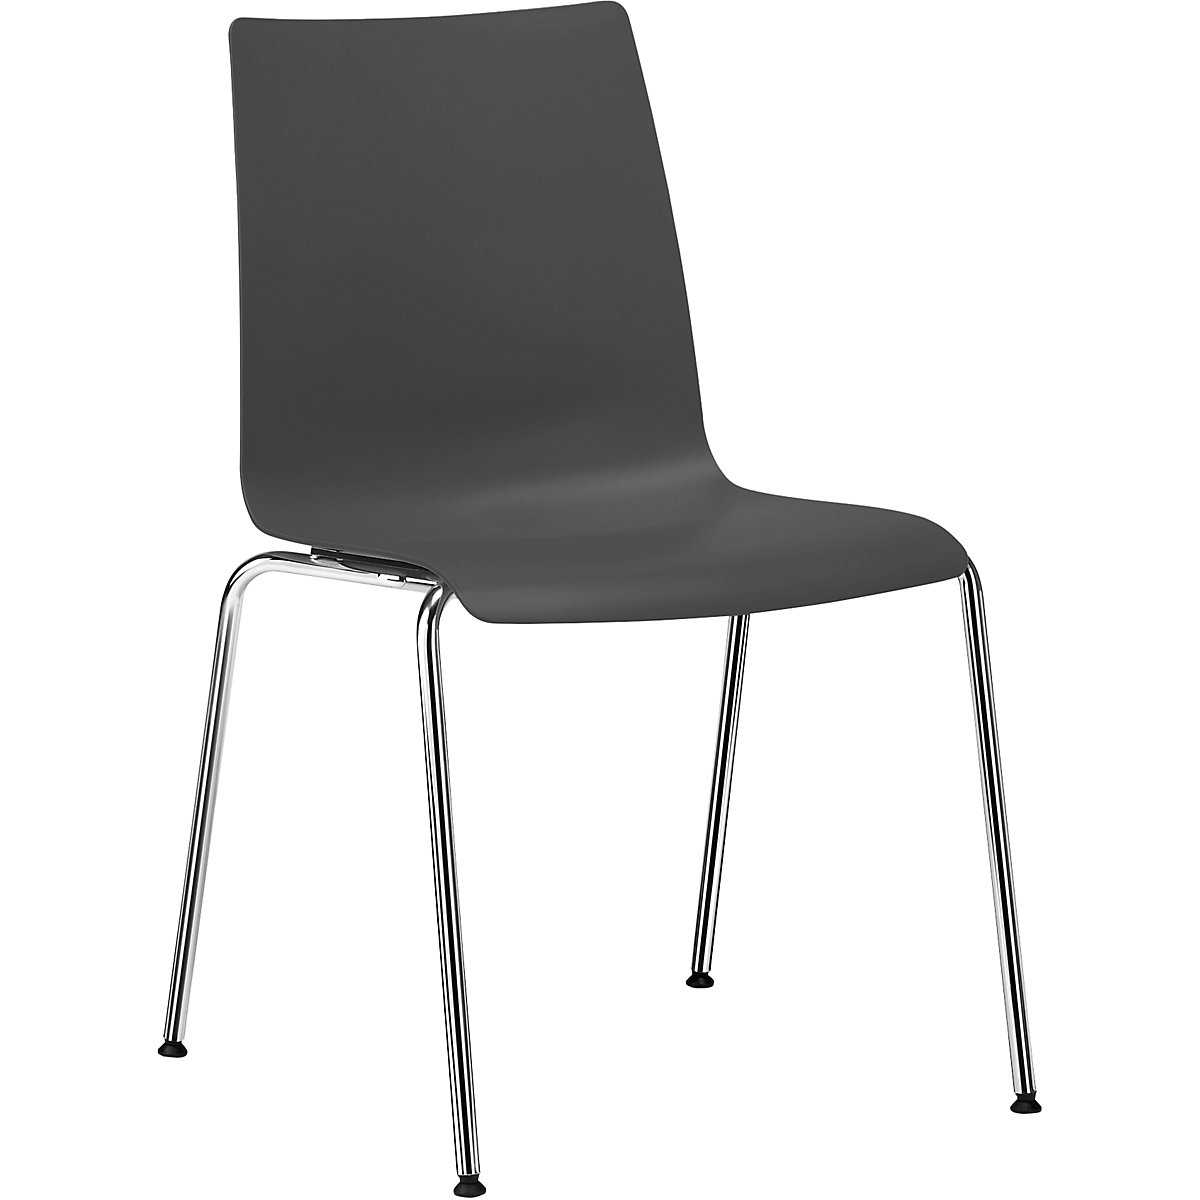 Plastična školjkasta stolica SNIKE – interstuhl, neprekidno sjedalo od PP-a, u antracit boji-5